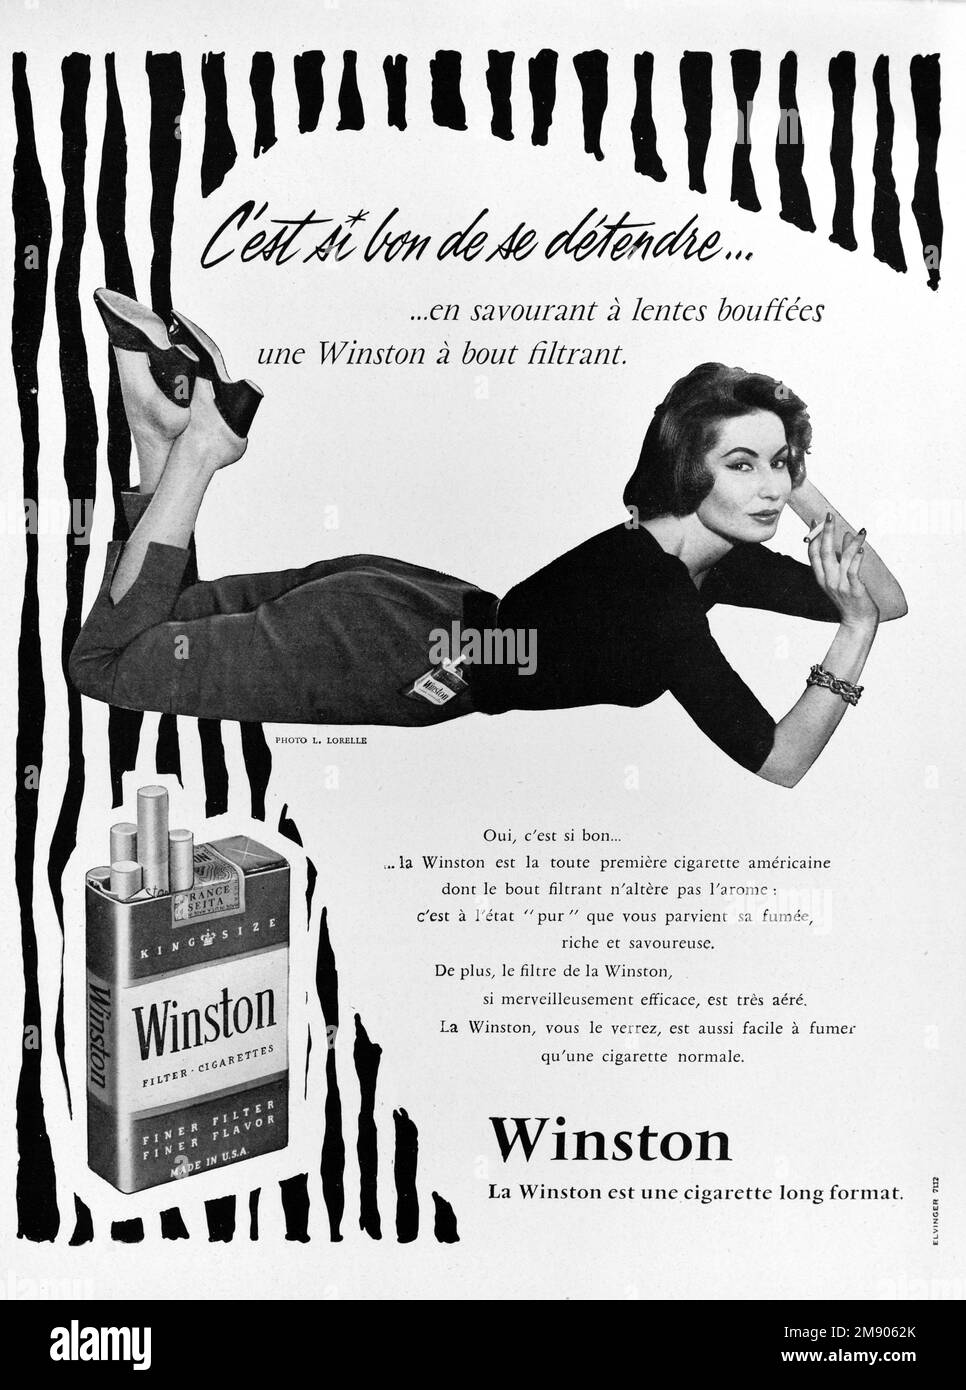 Vintage o antiguo anuncio, publicidad, publicidad o ilustración para Winston cigarrillos 1956. Ilustrado con la imagen de la mujer joven sofisticada que fuma o fumador femenino 1956 Foto de stock